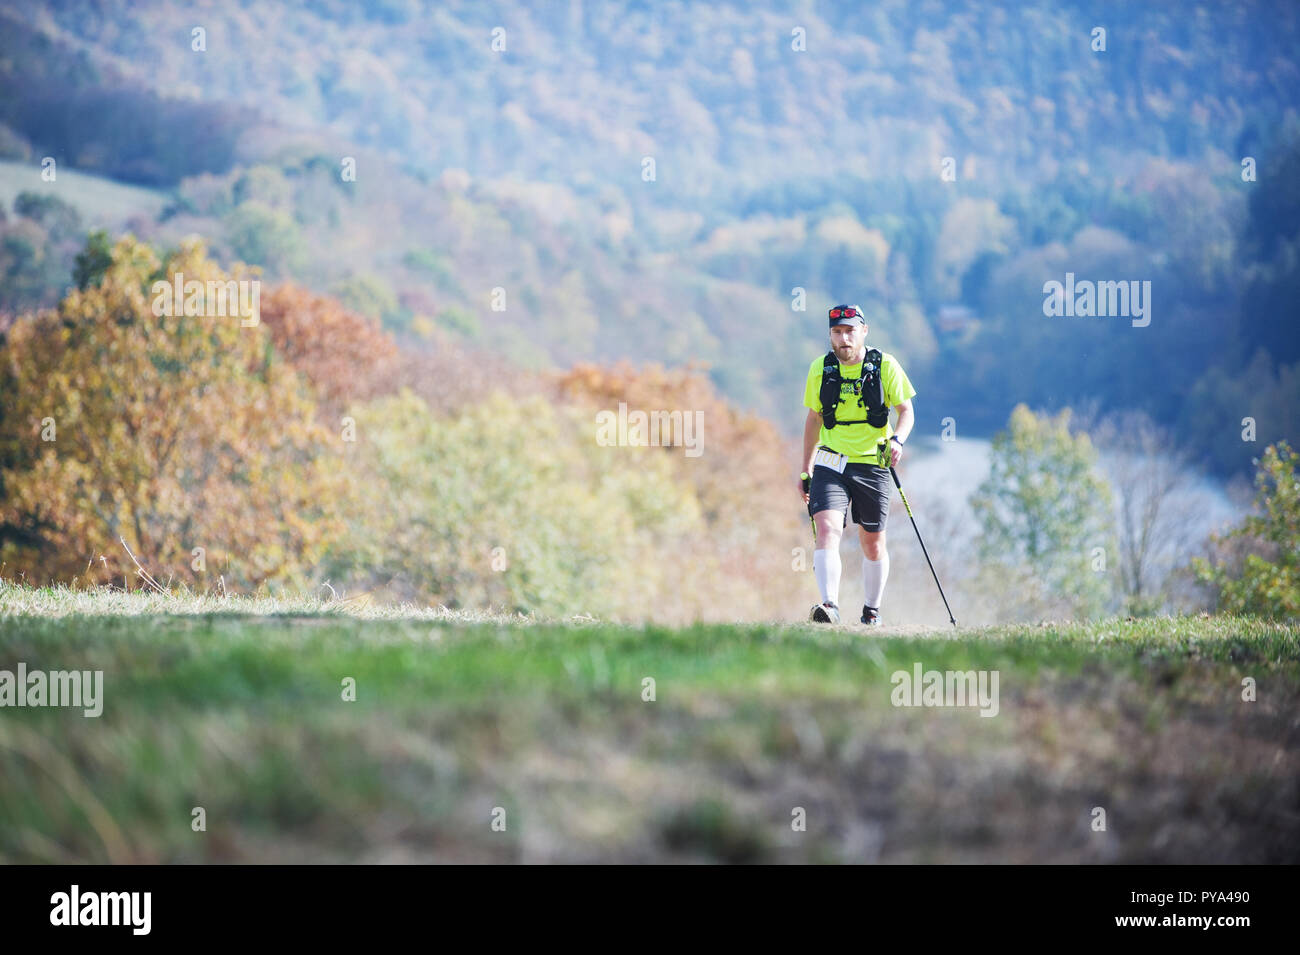 Tschechische Republik, SLAPY, Oktober 2018: Trail Maniacs laufen Wettbewerb. Bärtiger Mann mit Stöcken auf die Wiese. Herbstliche Atmosphäre. Stockfoto